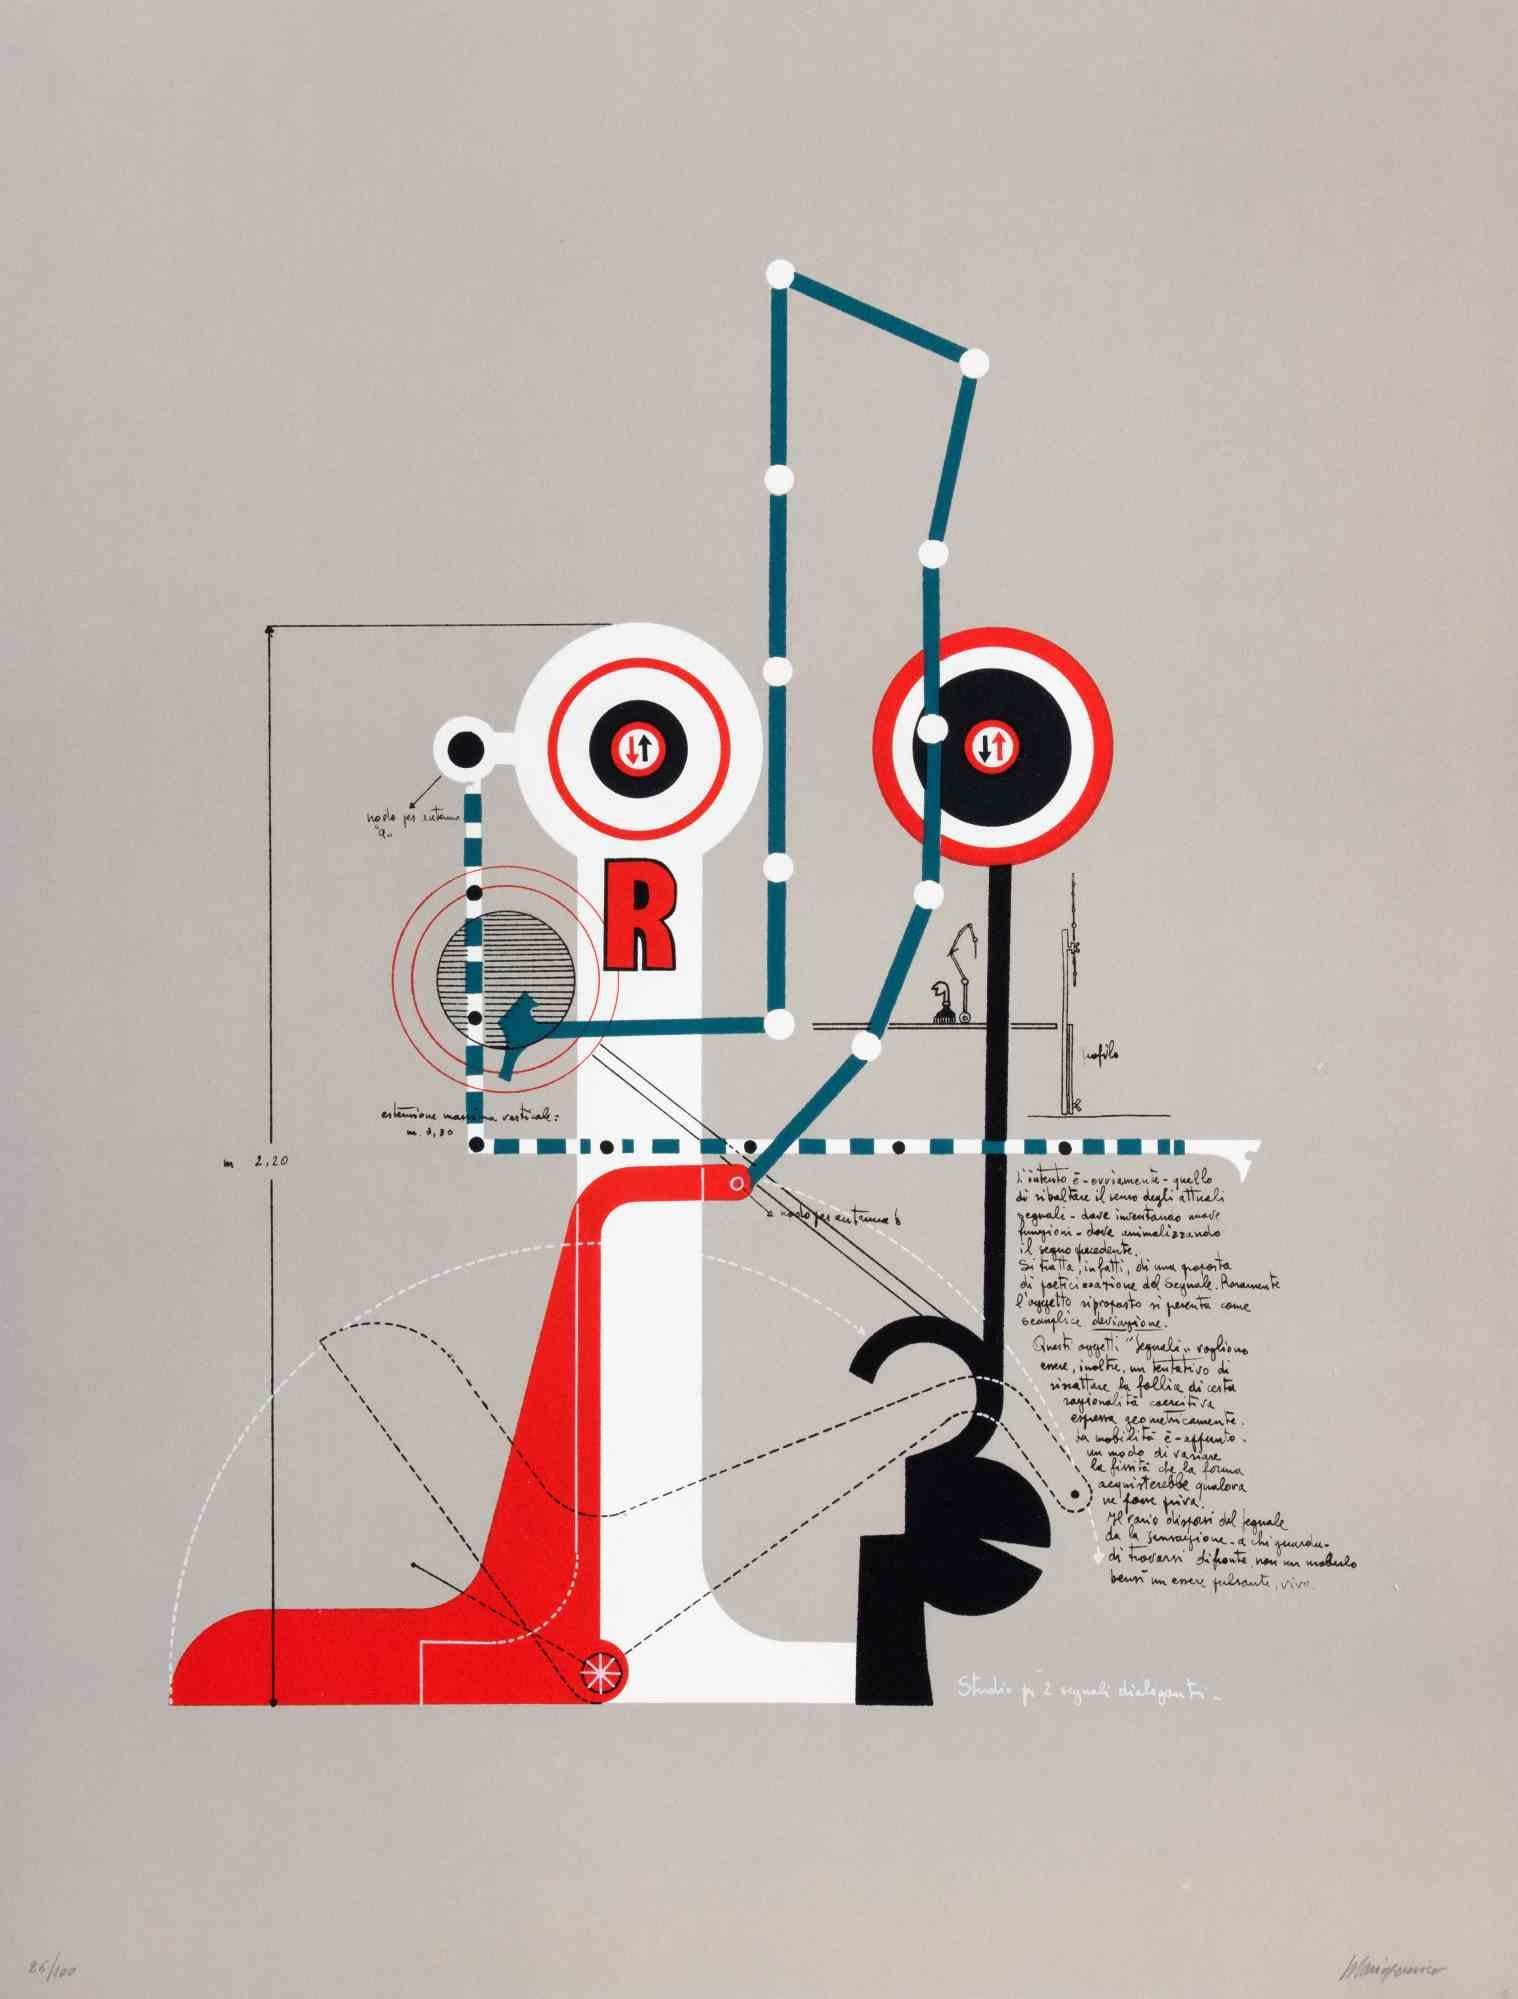 Étude pour deux signaux communicants est une œuvre d'art contemporain réalisée par Mario Persico dans les années 1970.

Lithographie en couleurs mélangées

Titre dans la marge inférieure.

Signé à la main par l'artiste

Numéroté dans la marge